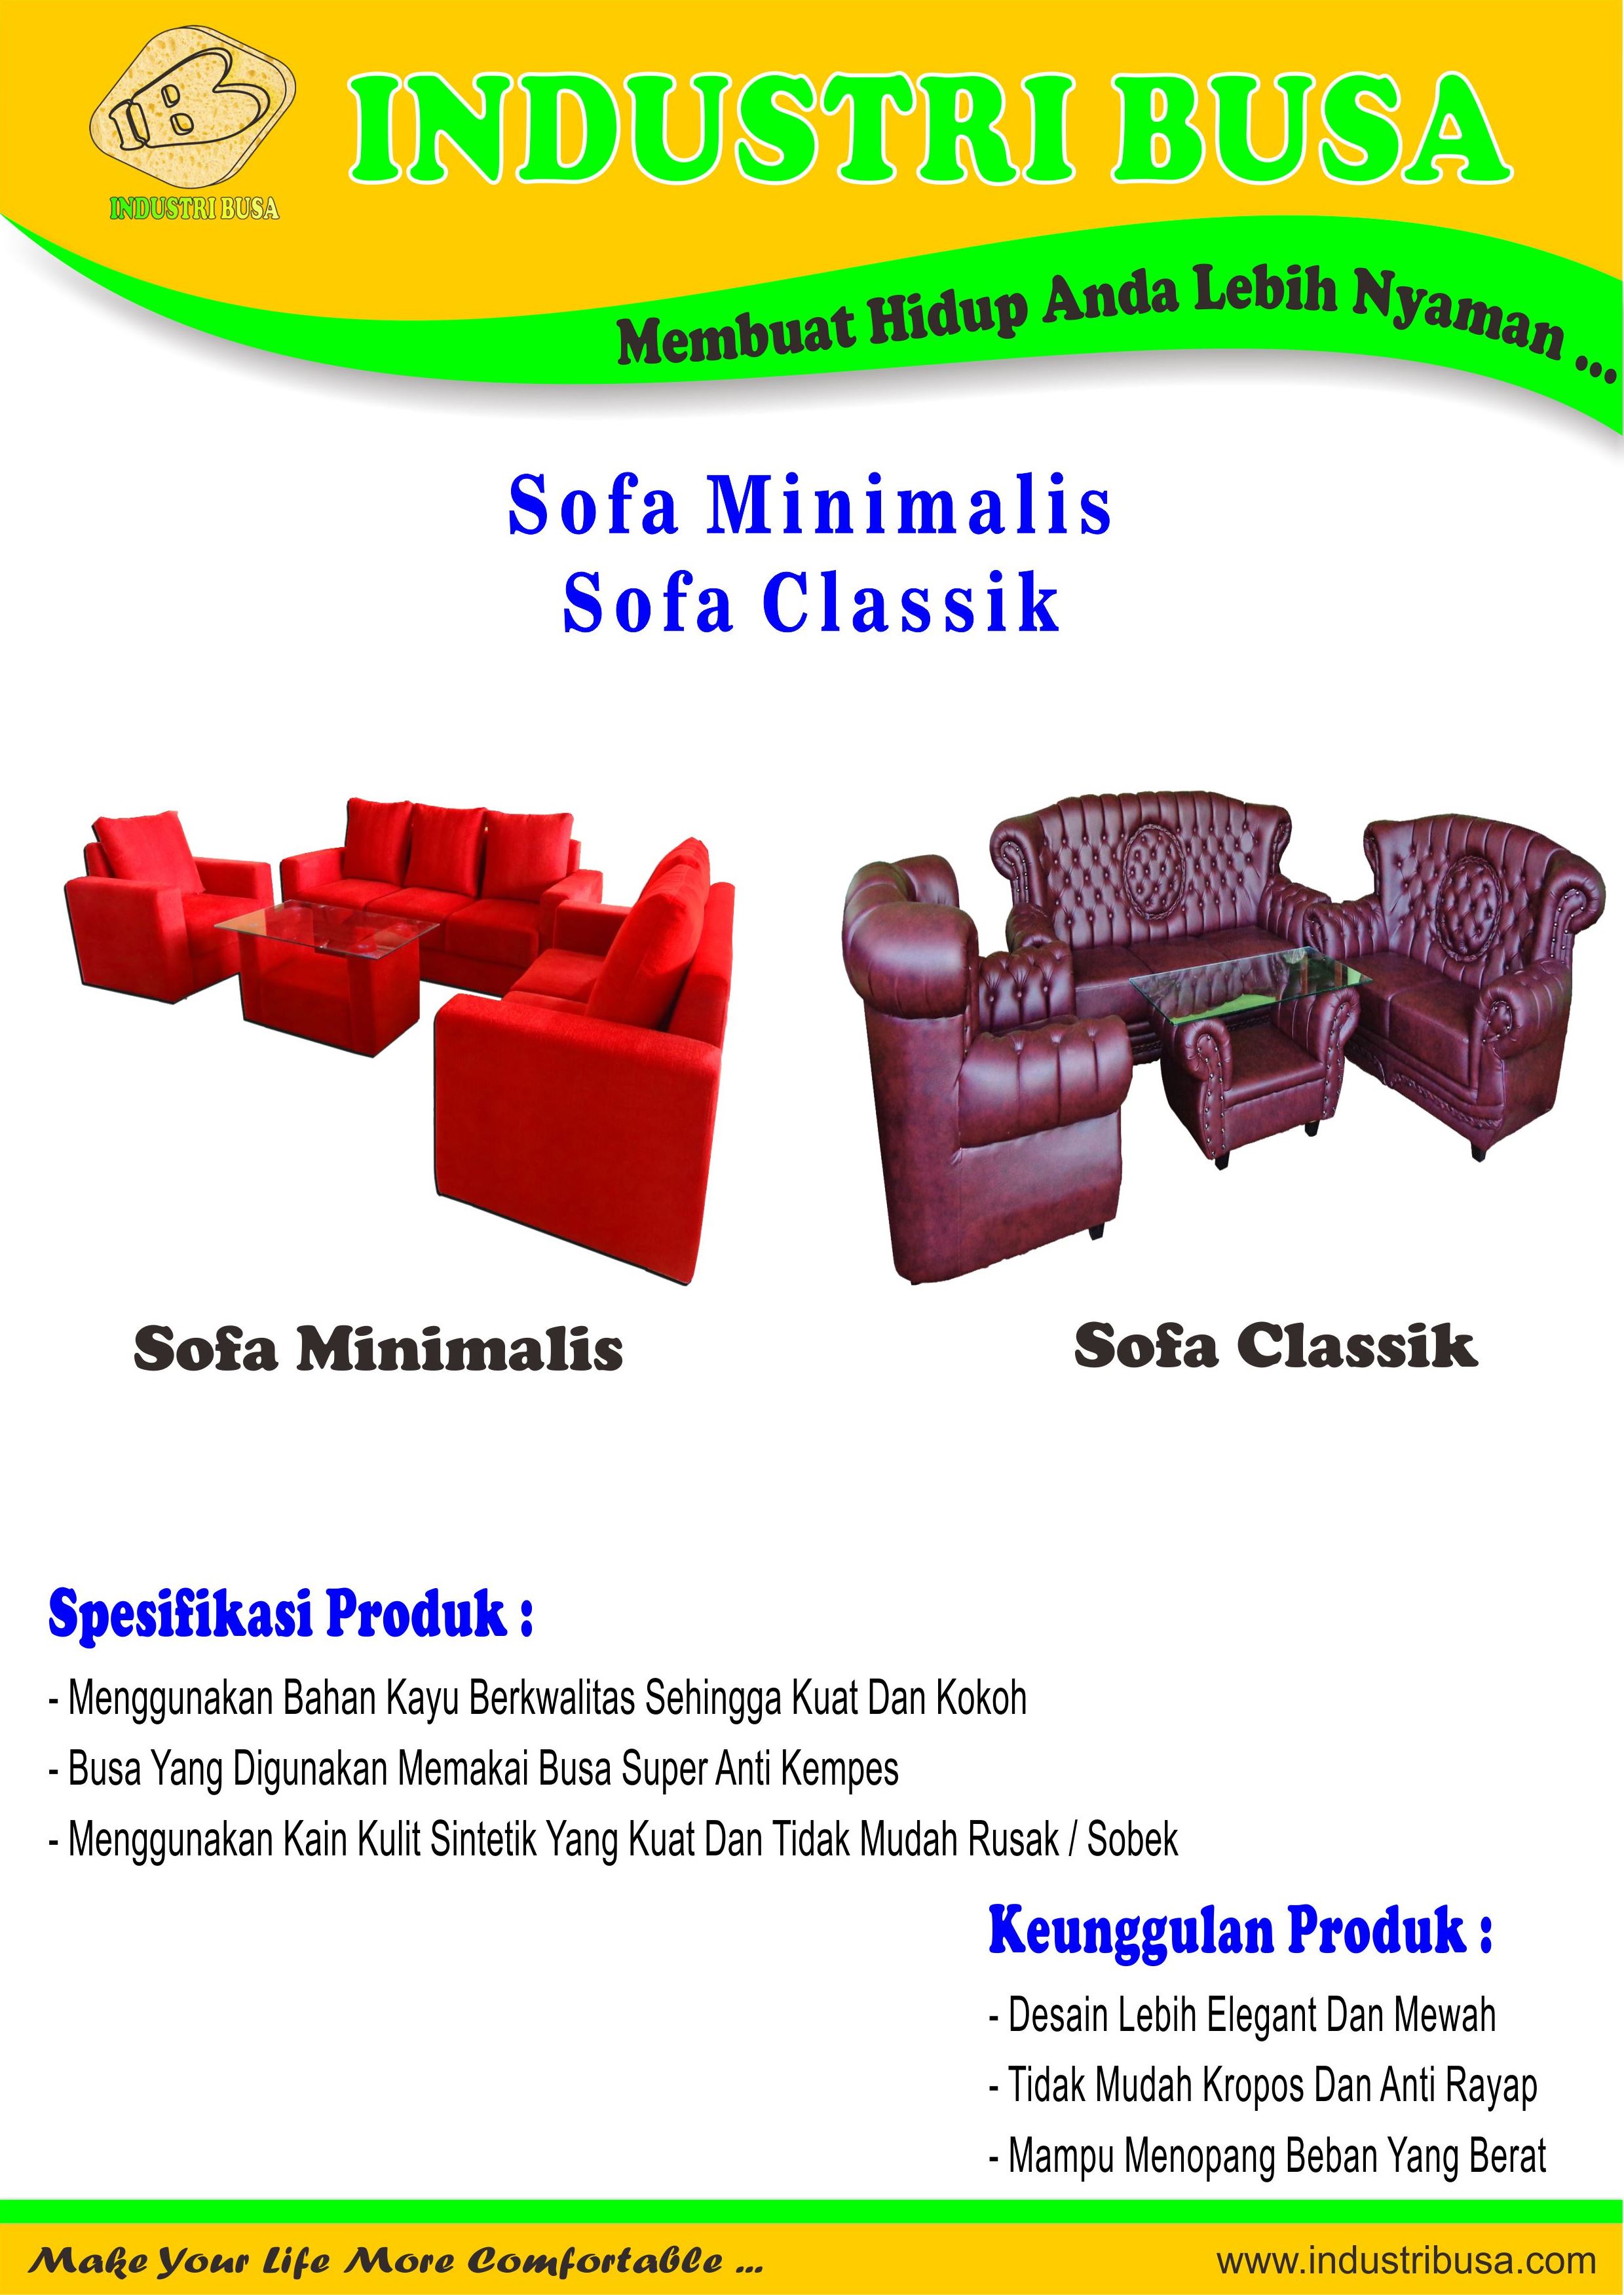 Sofa Classik